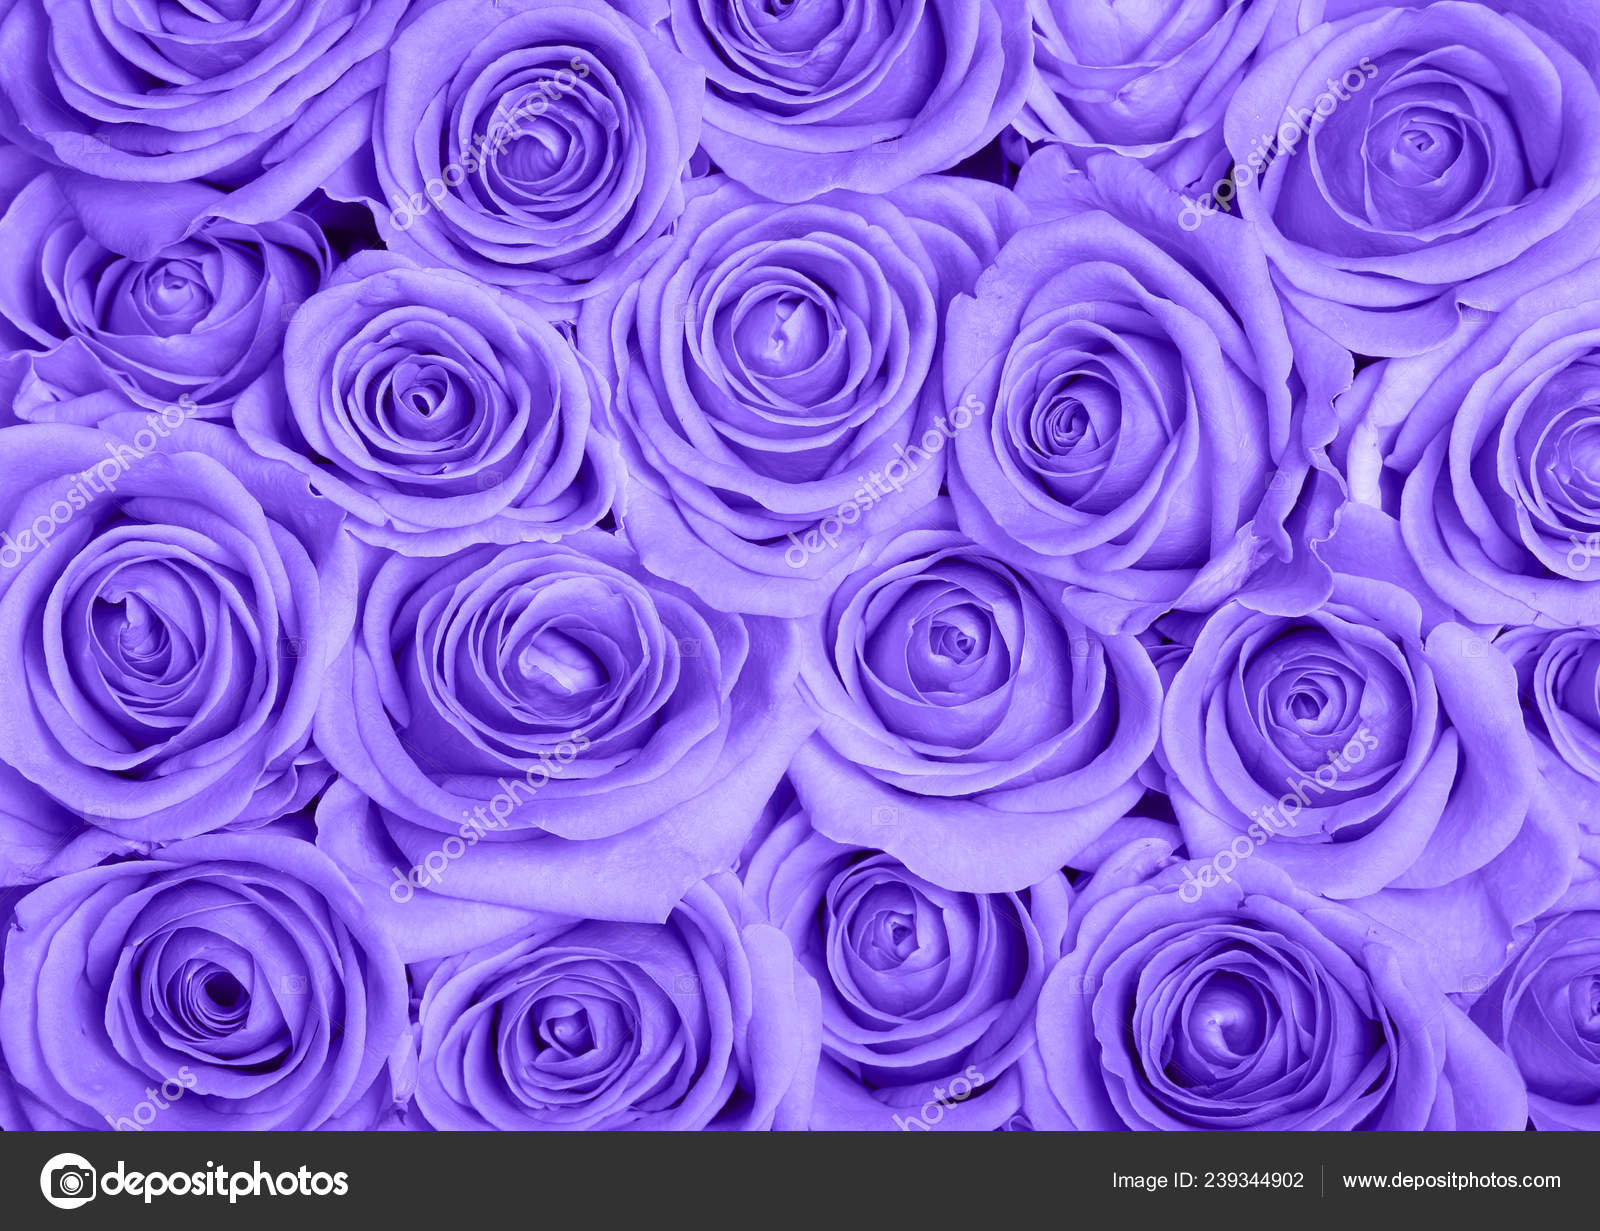 Chào các bạn! Đừng bỏ lỡ cơ hội thưởng thức hình nền hoa hồng tím đầy màu sắc và ánh sáng tuyệt đẹp. Hãy tìm kiếm và cài đặt ngay để cảm nhận sự quyến rũ của loài hoa này trên màn hình của bạn.